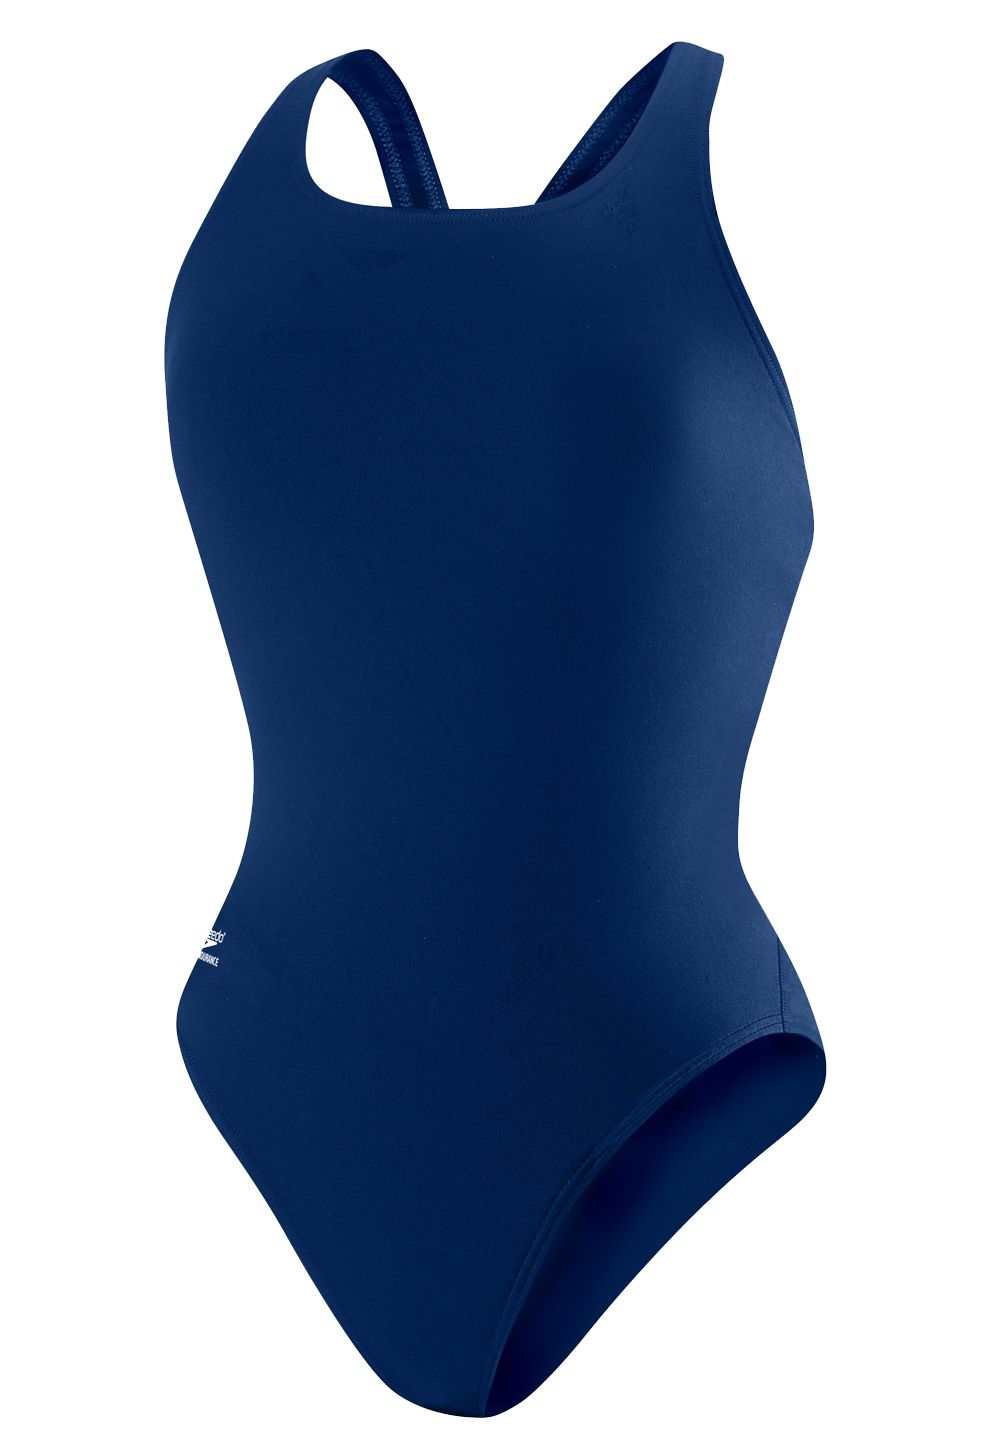 SPEEDO Women's Super Proback Swimsuit, Navy, 10/36 - image 1 of 2